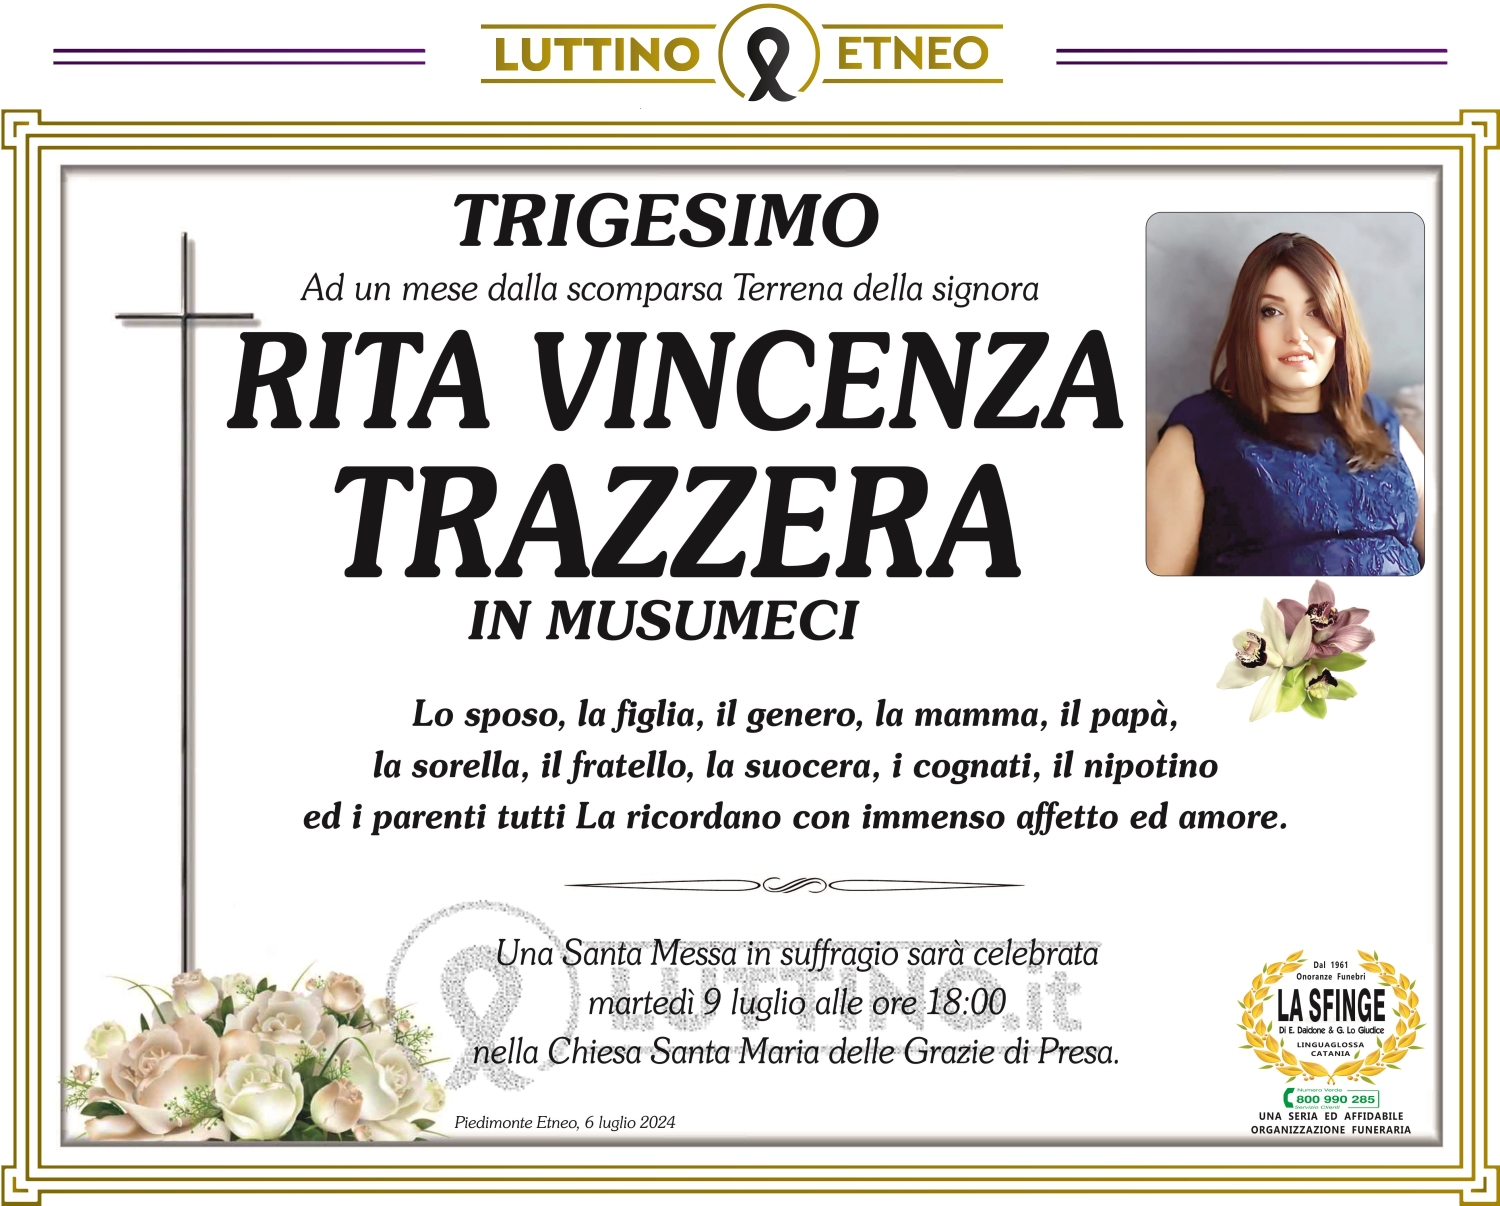 Rita Vincenza Trazzera